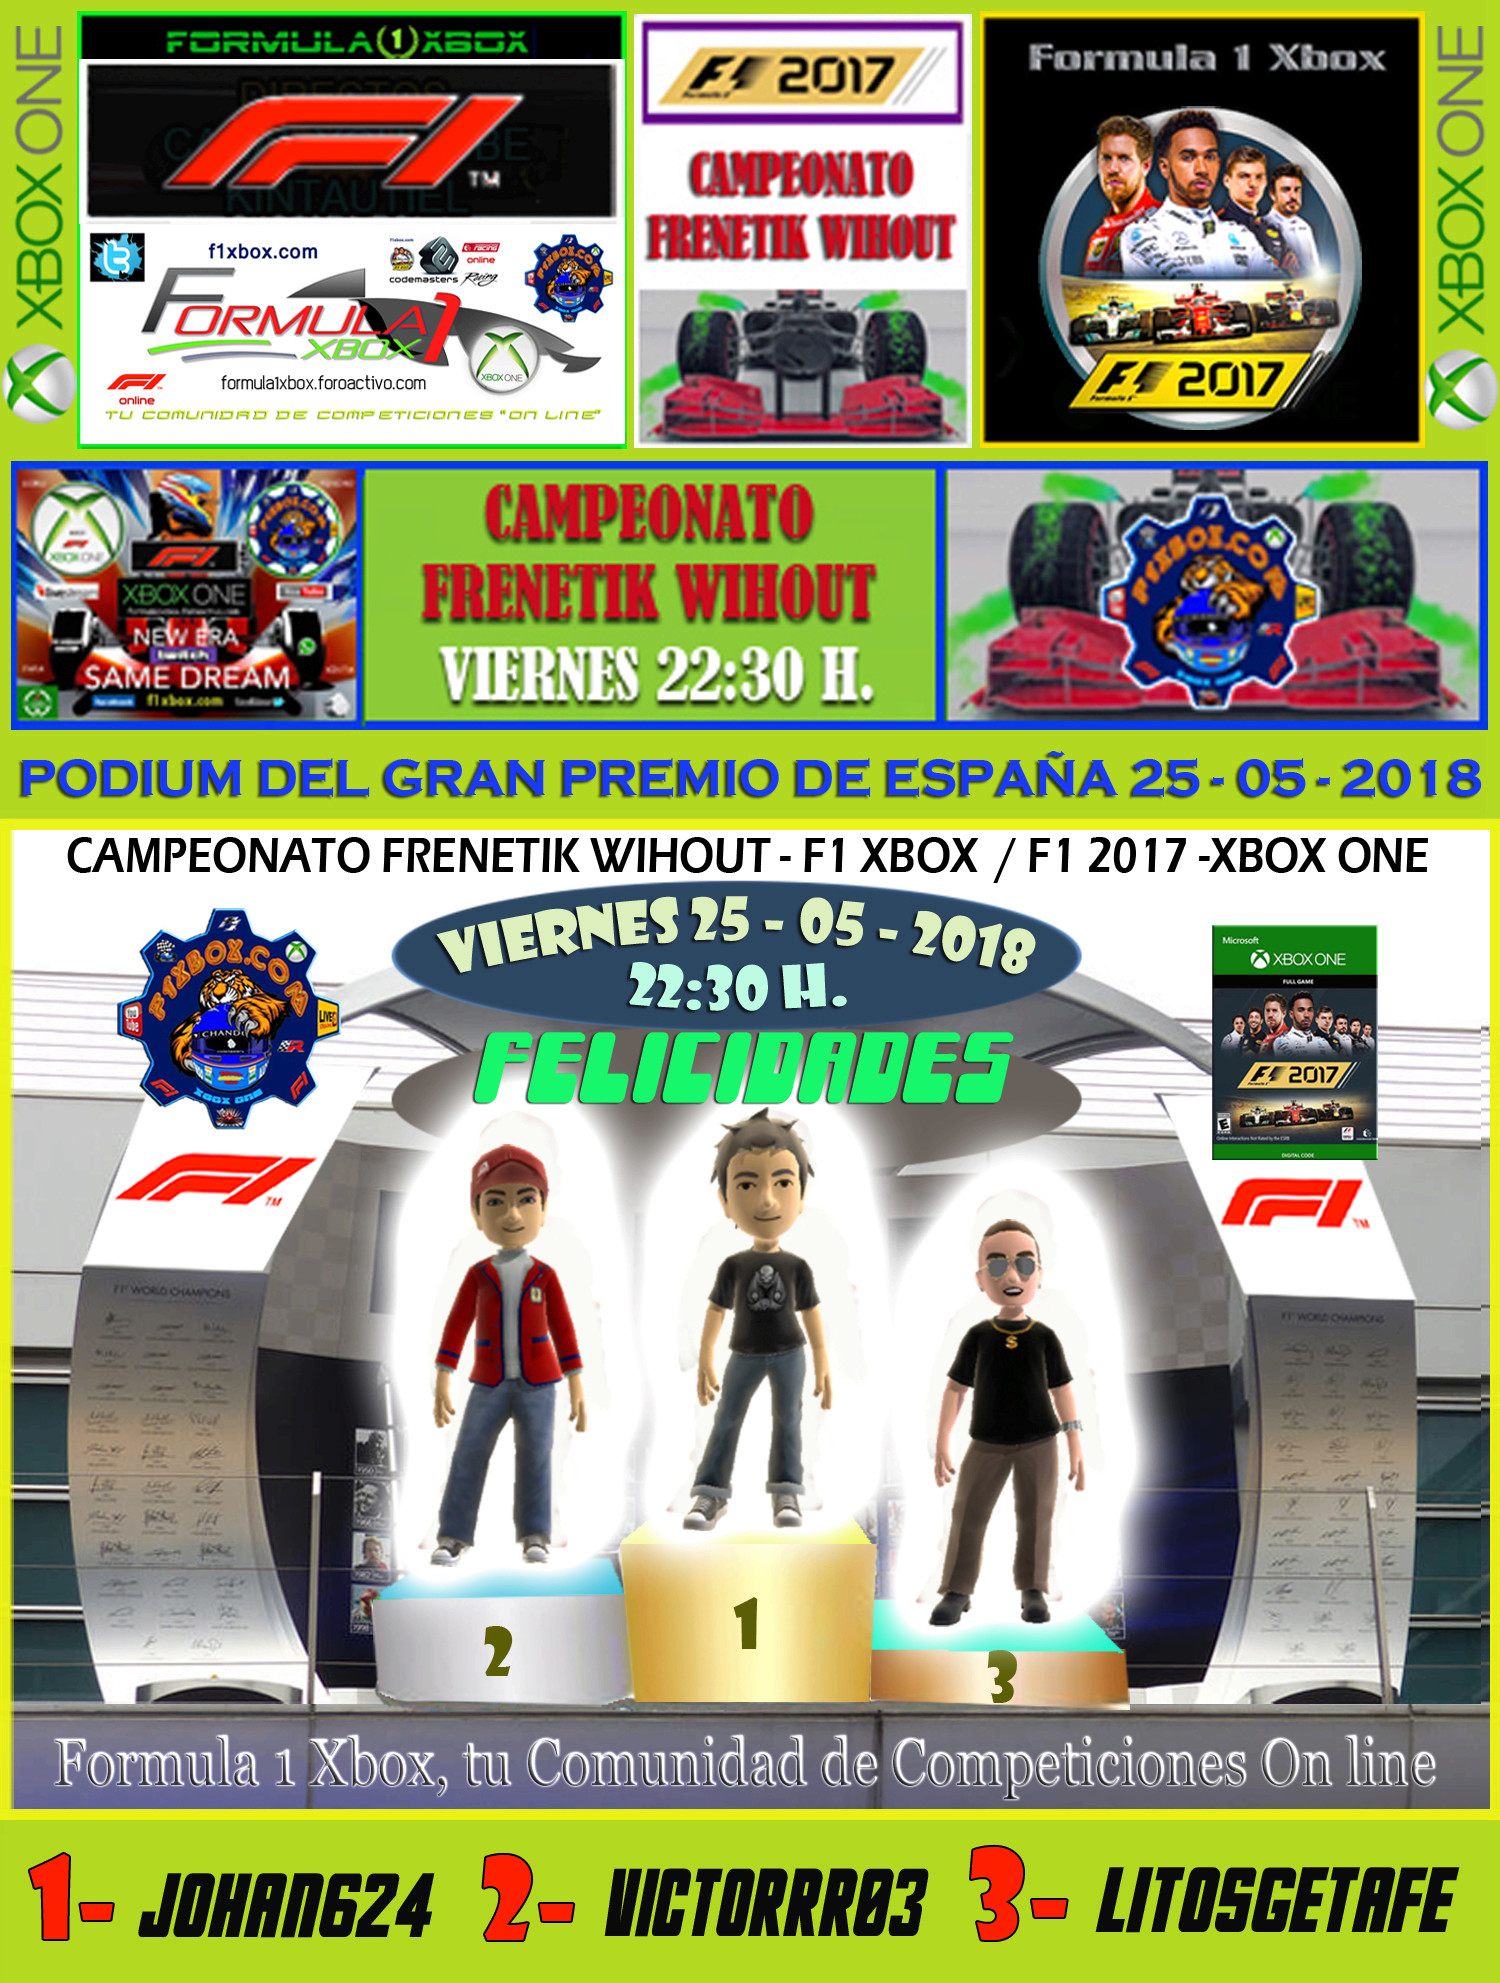 F1 2017 - XBOX ONE / CAMPEONATO FRENETIK WIHOUT - F1 XBOX / RESULTADOS Y PODIUM DEL G. P. DE ESPAÑA DEL VIERNES 25 - 05 - 2018. Podium51